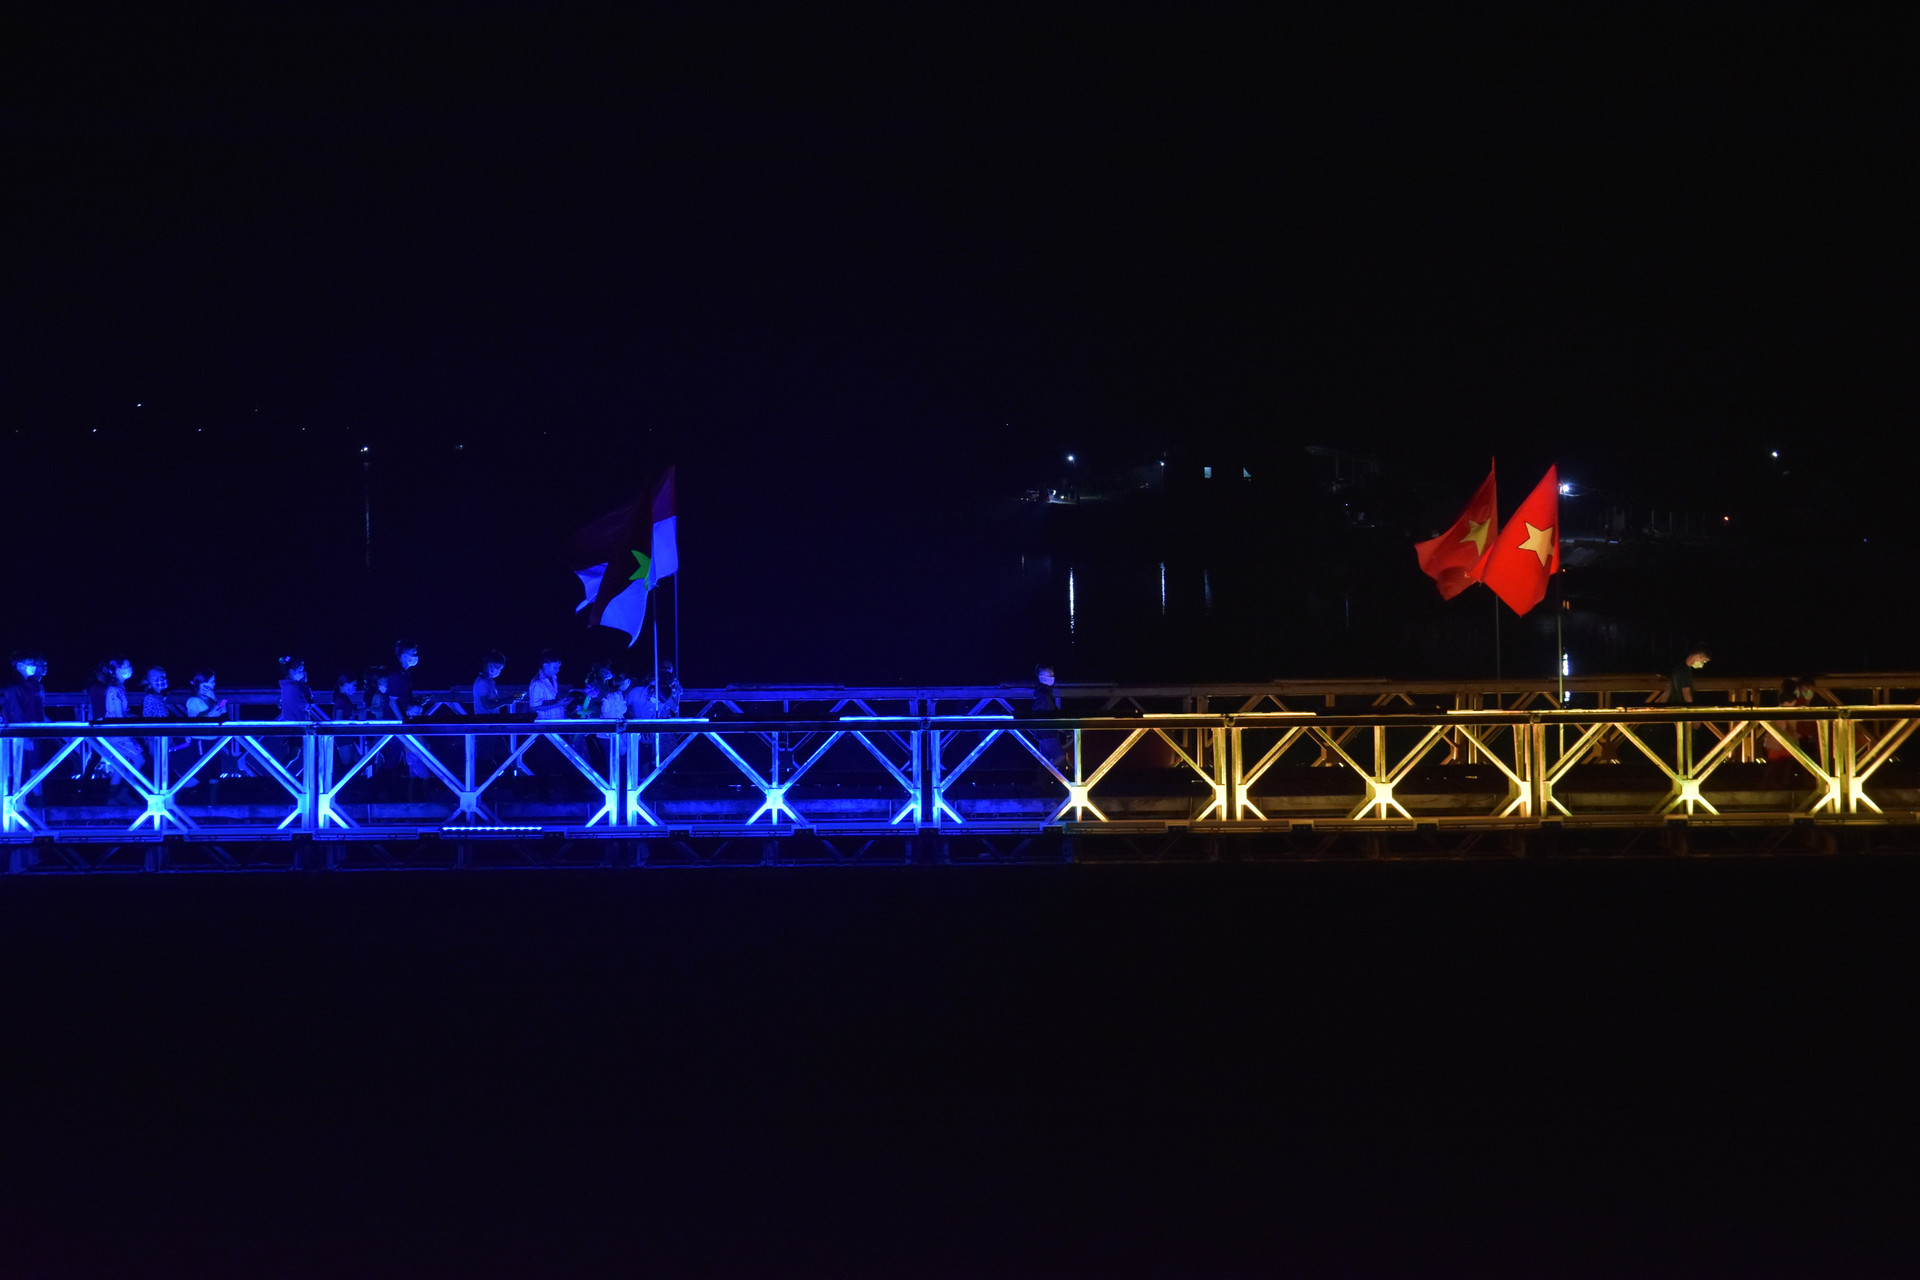 Hệ thống đèn gồm 2 màu xanh và vàng chạy dọc cầu Hiền Lương, dừng lại tại vạch sơn trắng giữa cầu - là nơi phân chia ranh giới hai miền Nam - Bắc.